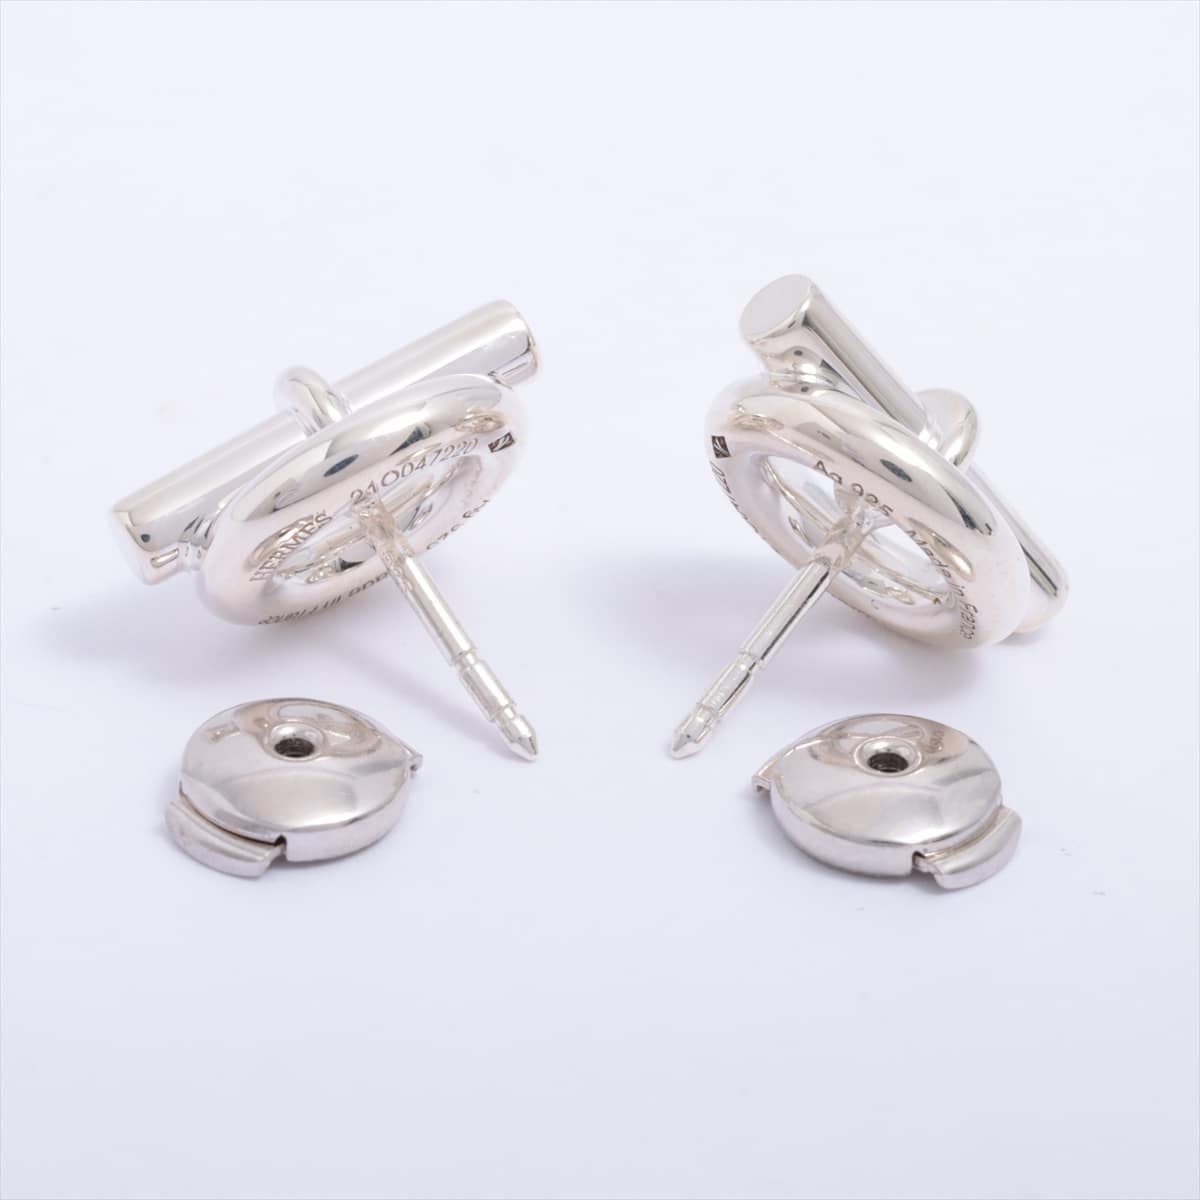 Hermès Chaîne d'Ancre Piercing jewelry 925 6.1g Silver